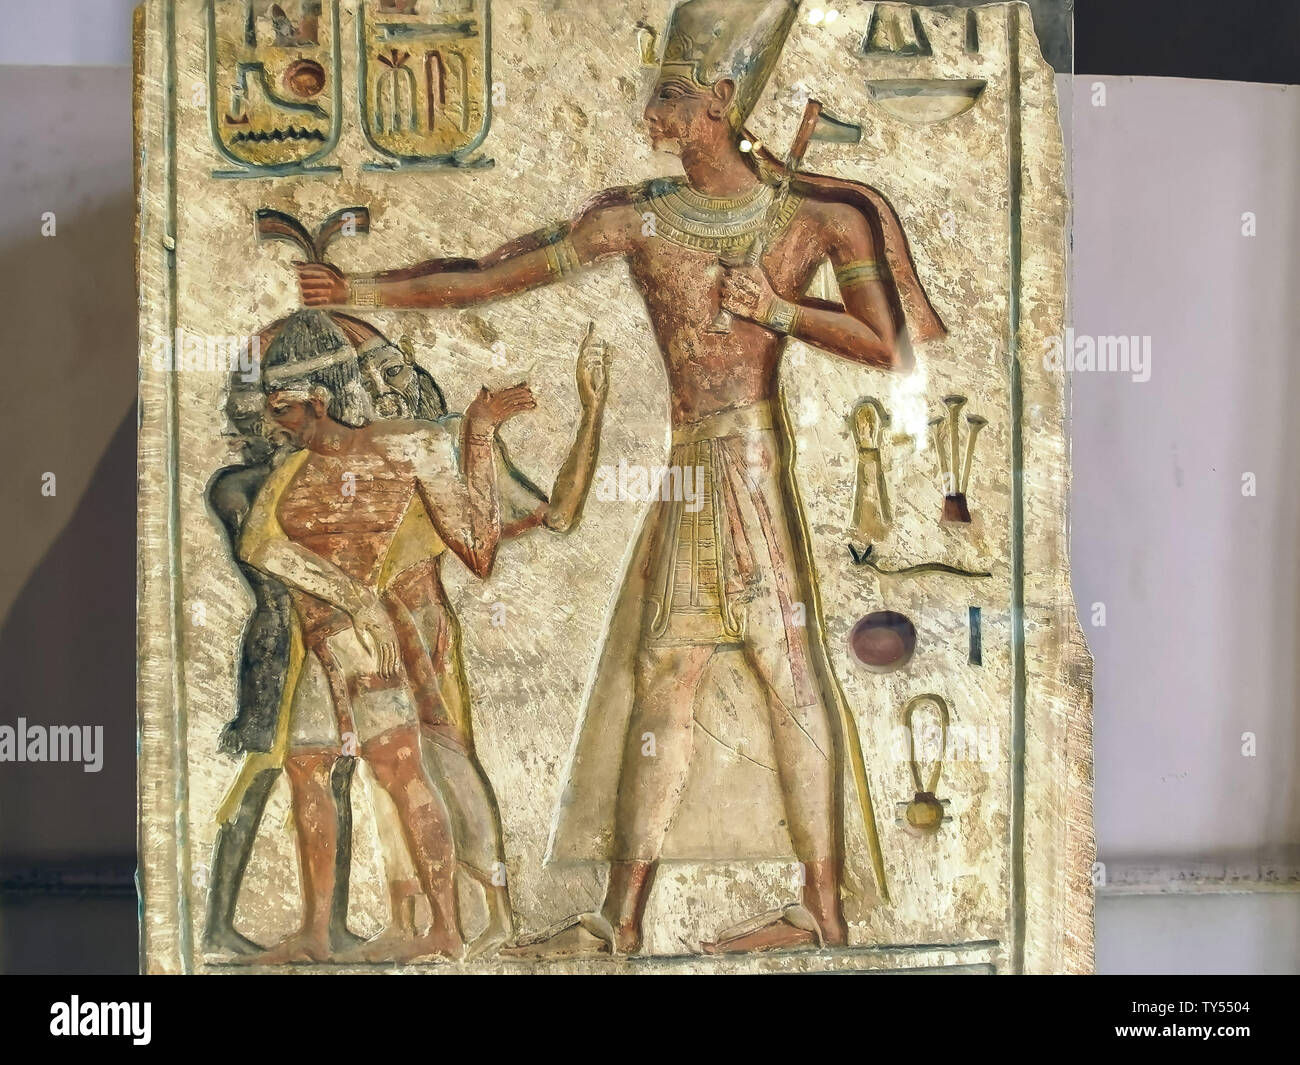 El Cairo, Egipto- Septiembre 26, 2016: captura de una estela grabada con la imagen de Ramses II en el Cairo Foto de stock